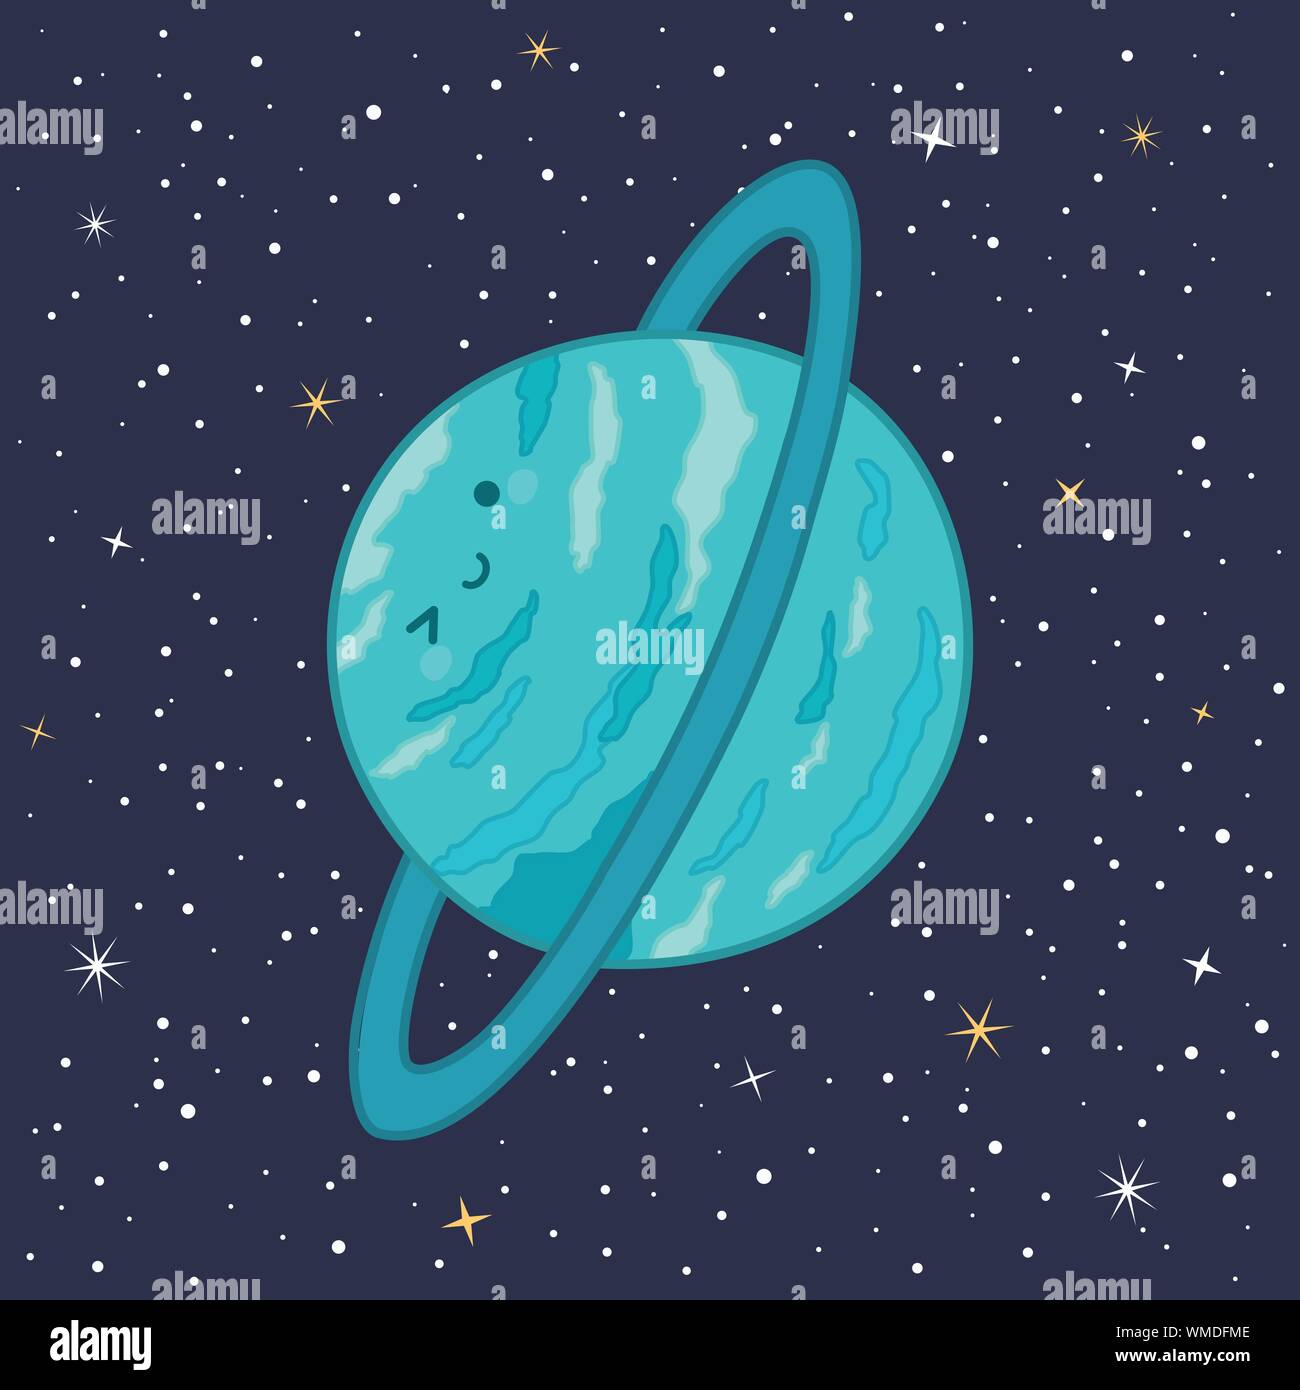 Carino Il pianeta Urano Sistema Solare divertente con volto sorridente cartoon illustrazione vettoriale Illustrazione Vettoriale